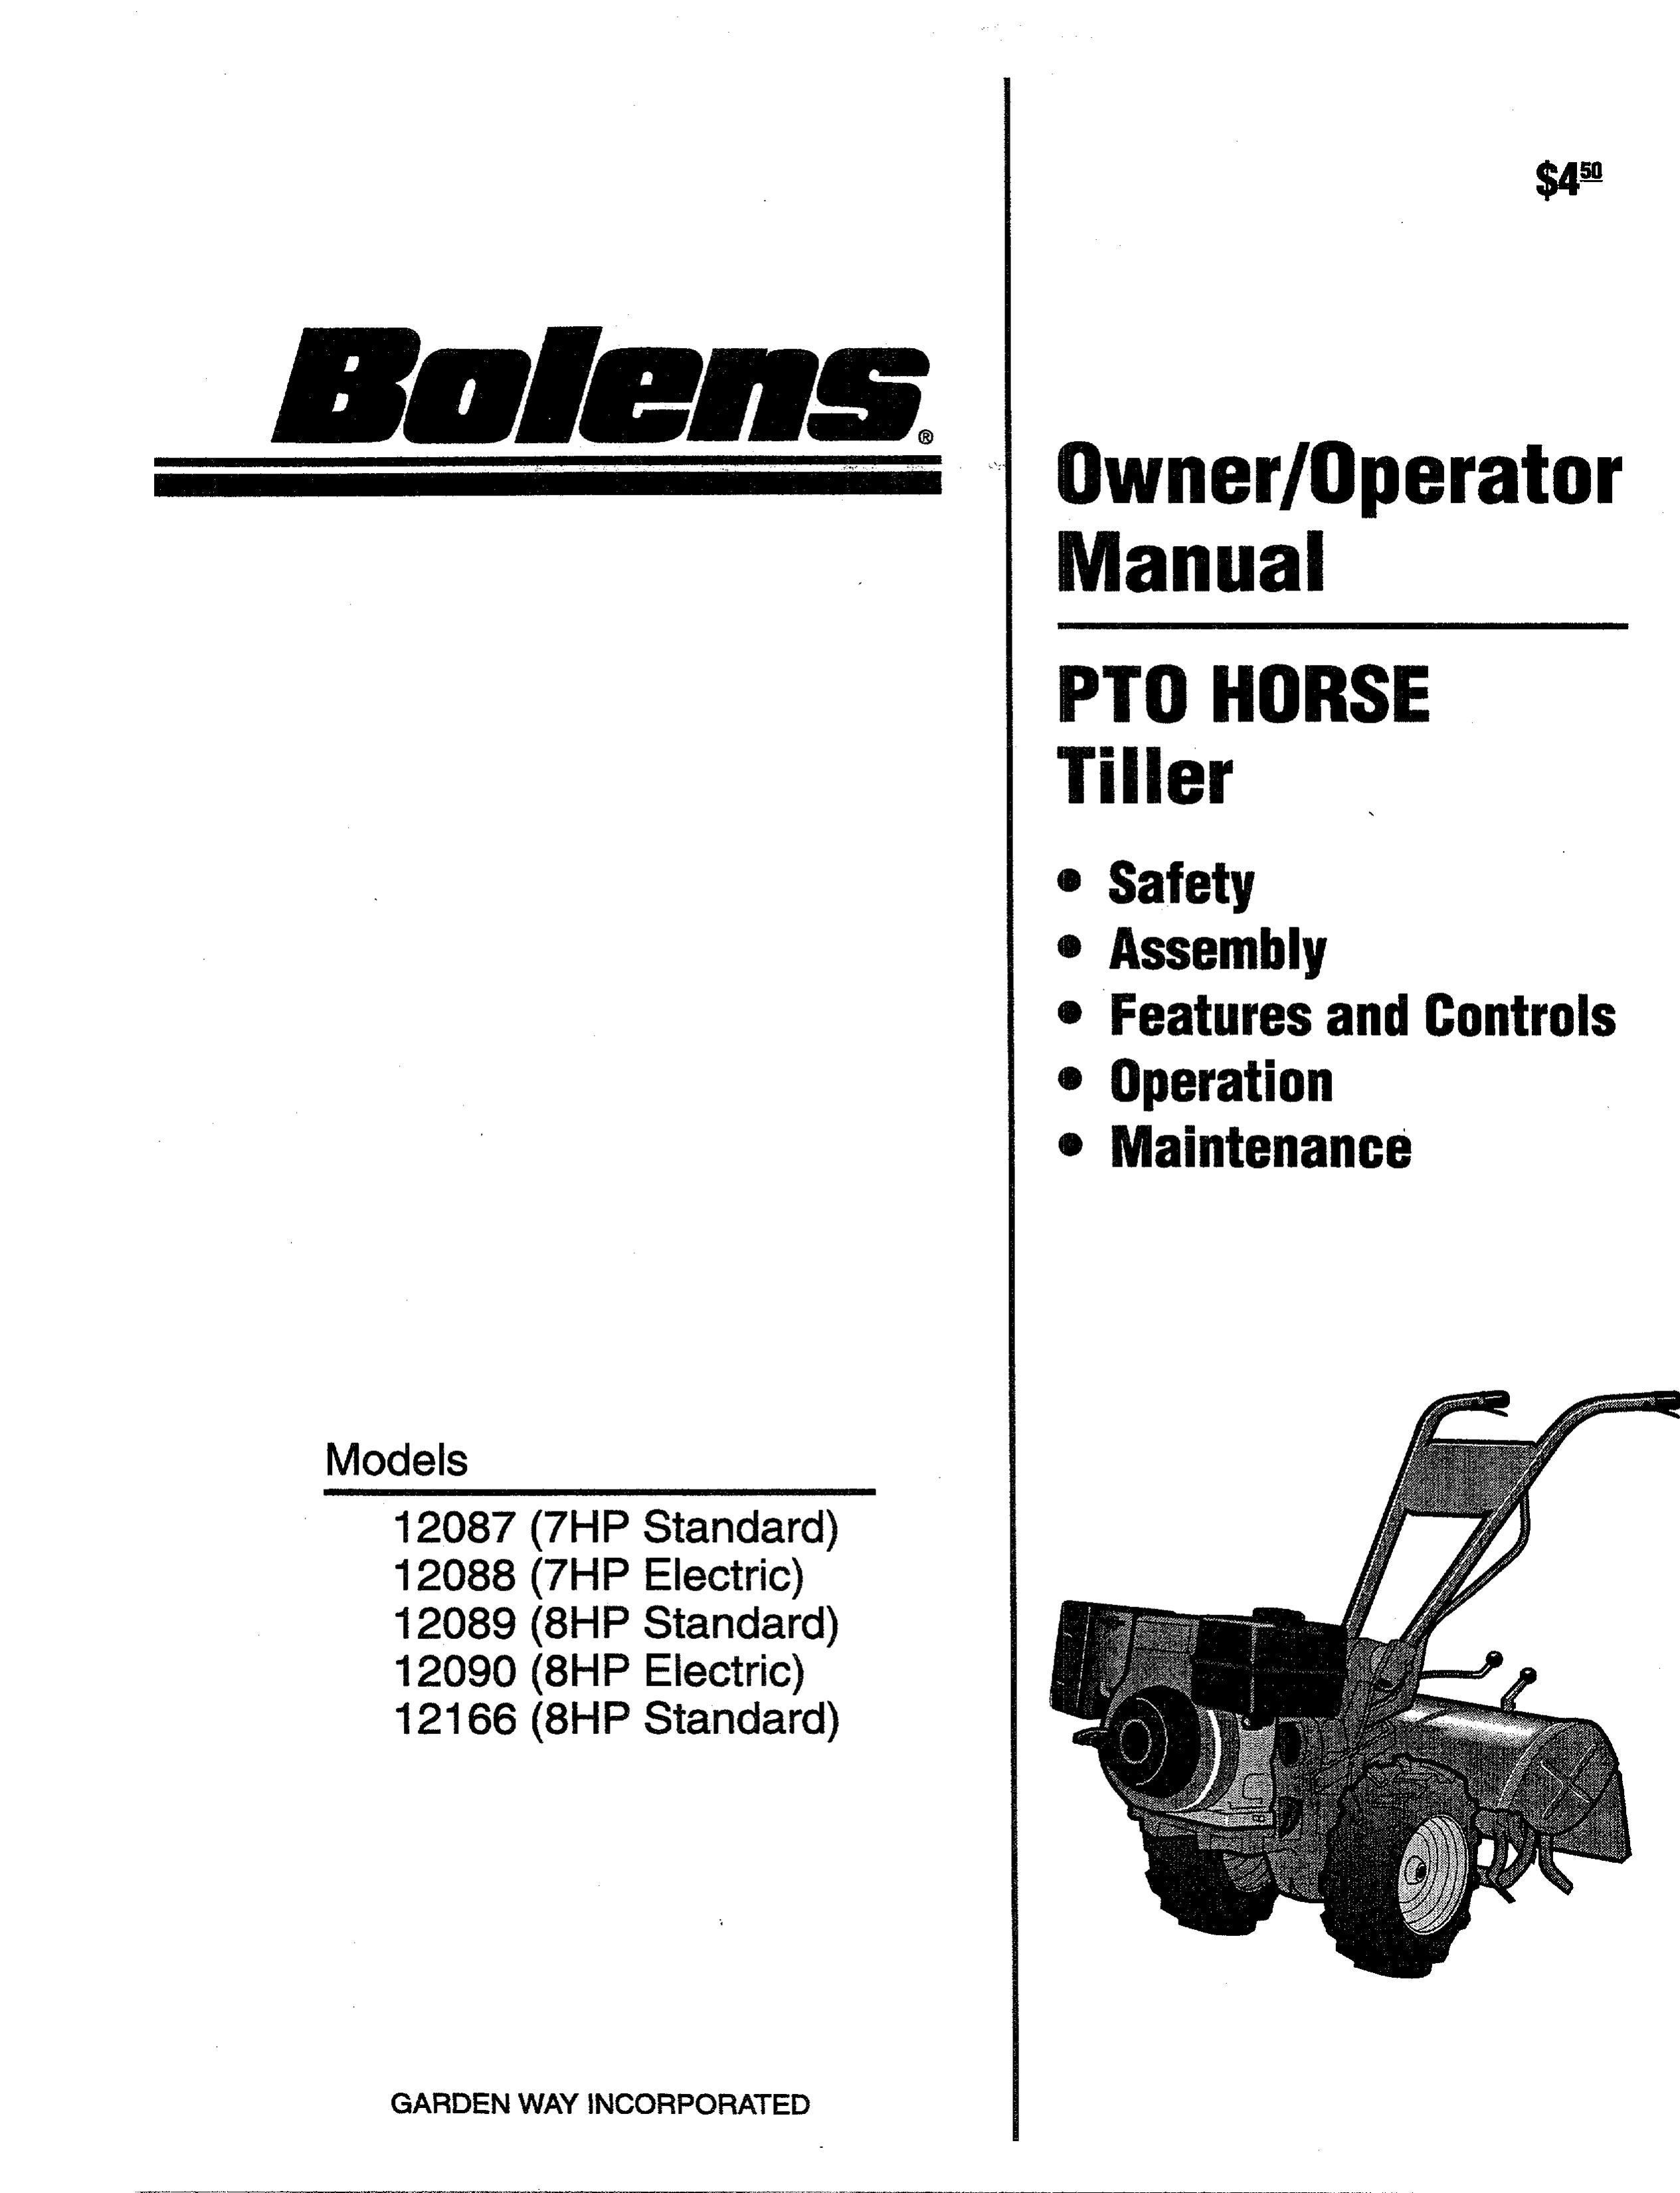 Bolens 12088-7HP Tiller User Manual